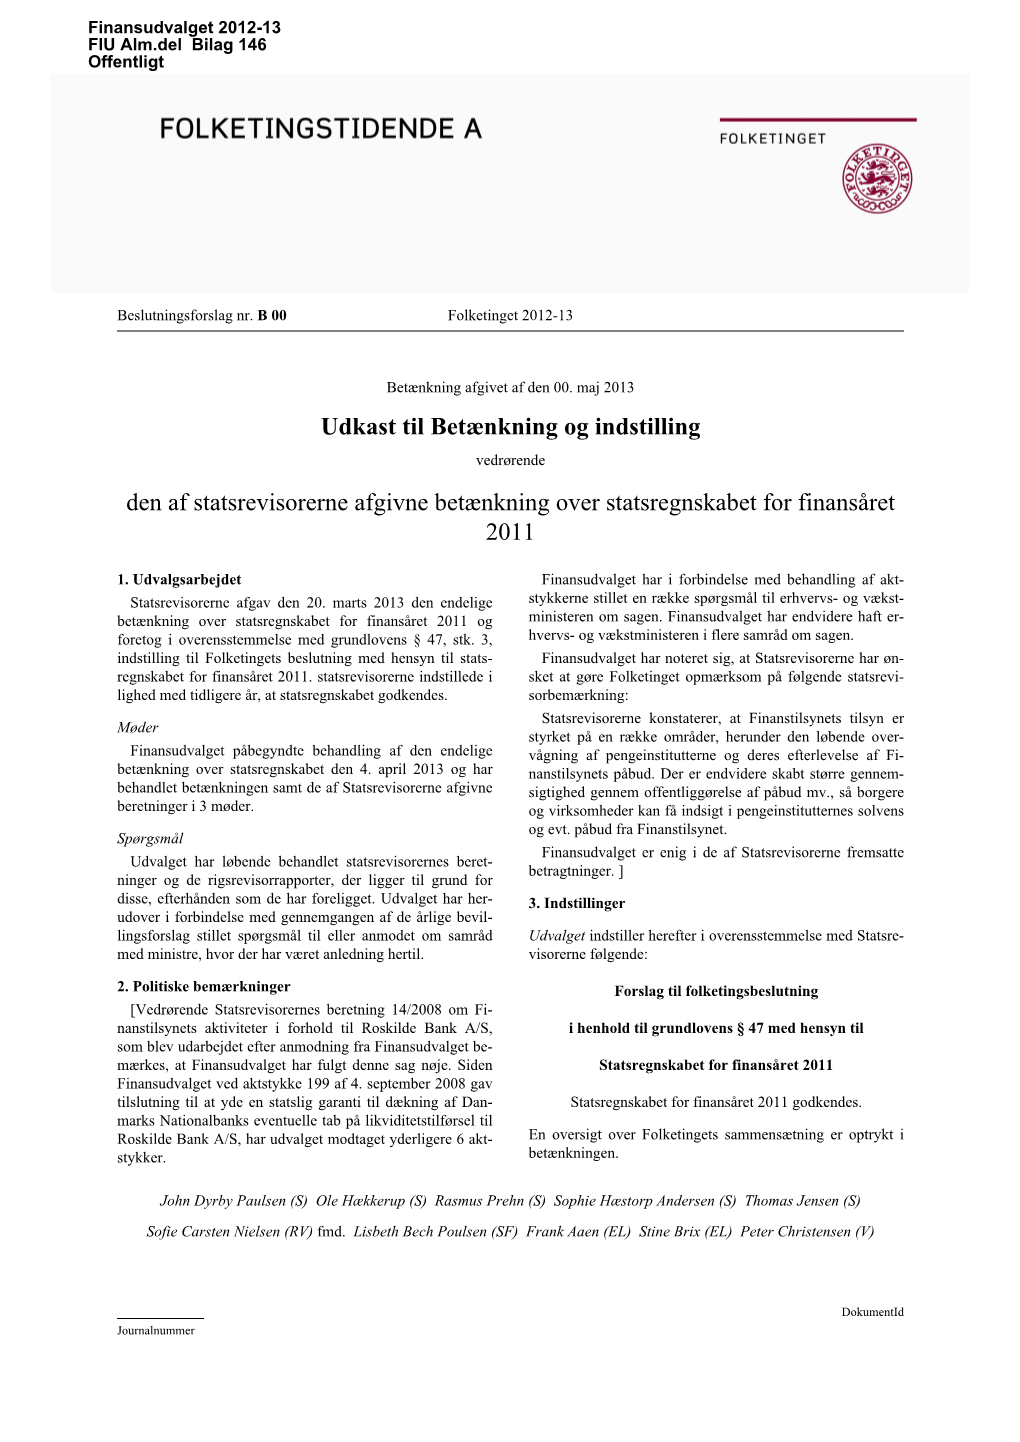 Udkast Til Betænkning Og Indstilling Vedrørende Den Af Statsrevisorerne Afgivne Betænkning Over Statsregnskabet for Finansåret 2011